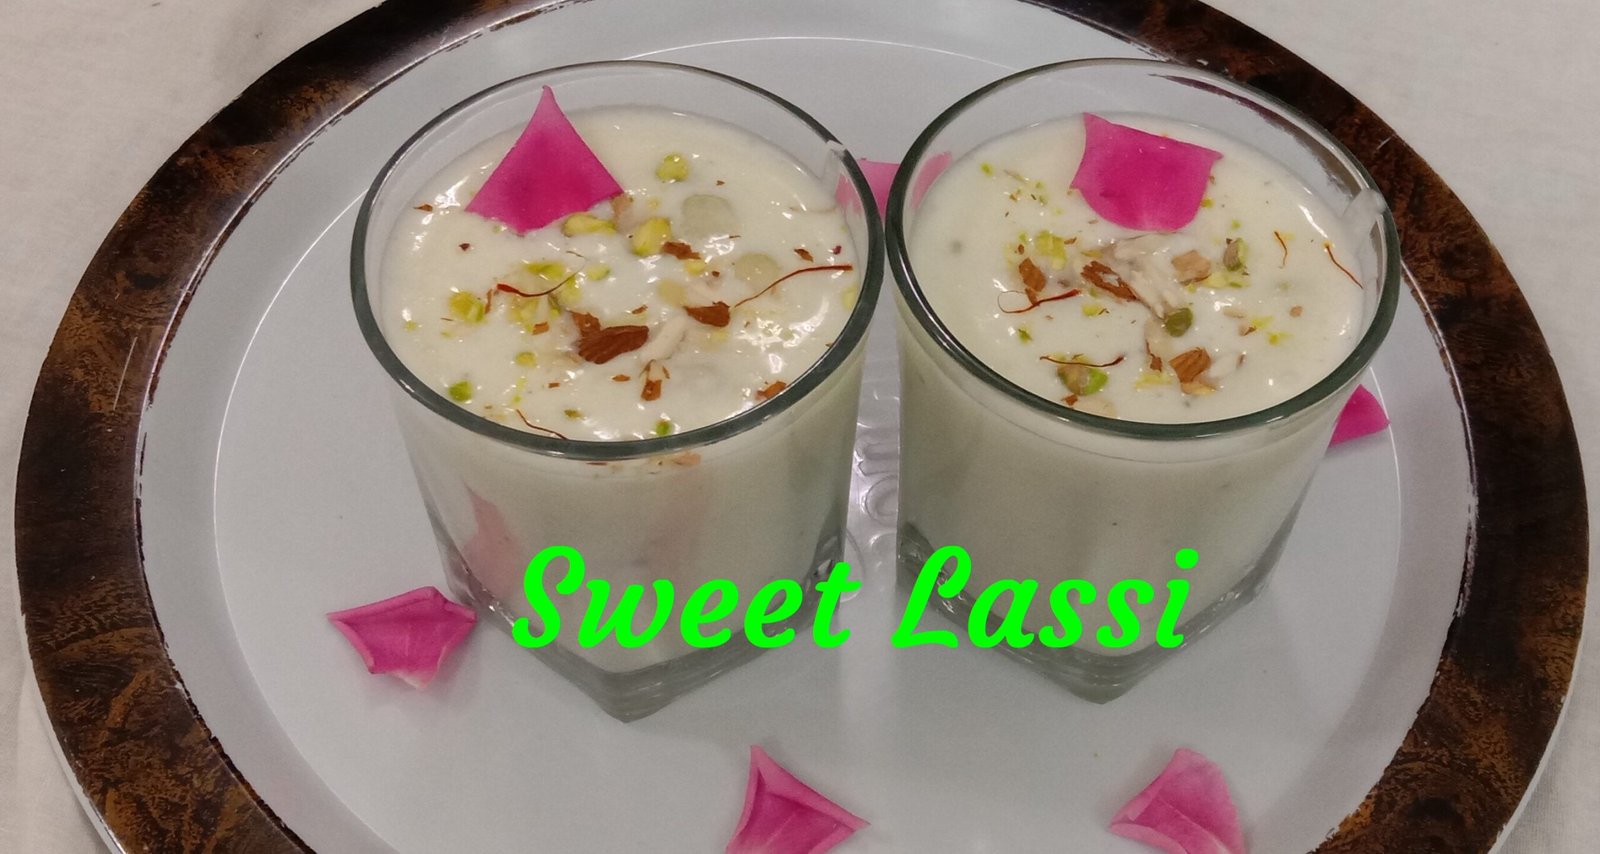 Sweet Lassi in 2 glasses, Sweet Lassi and Masala Lassi recipe.